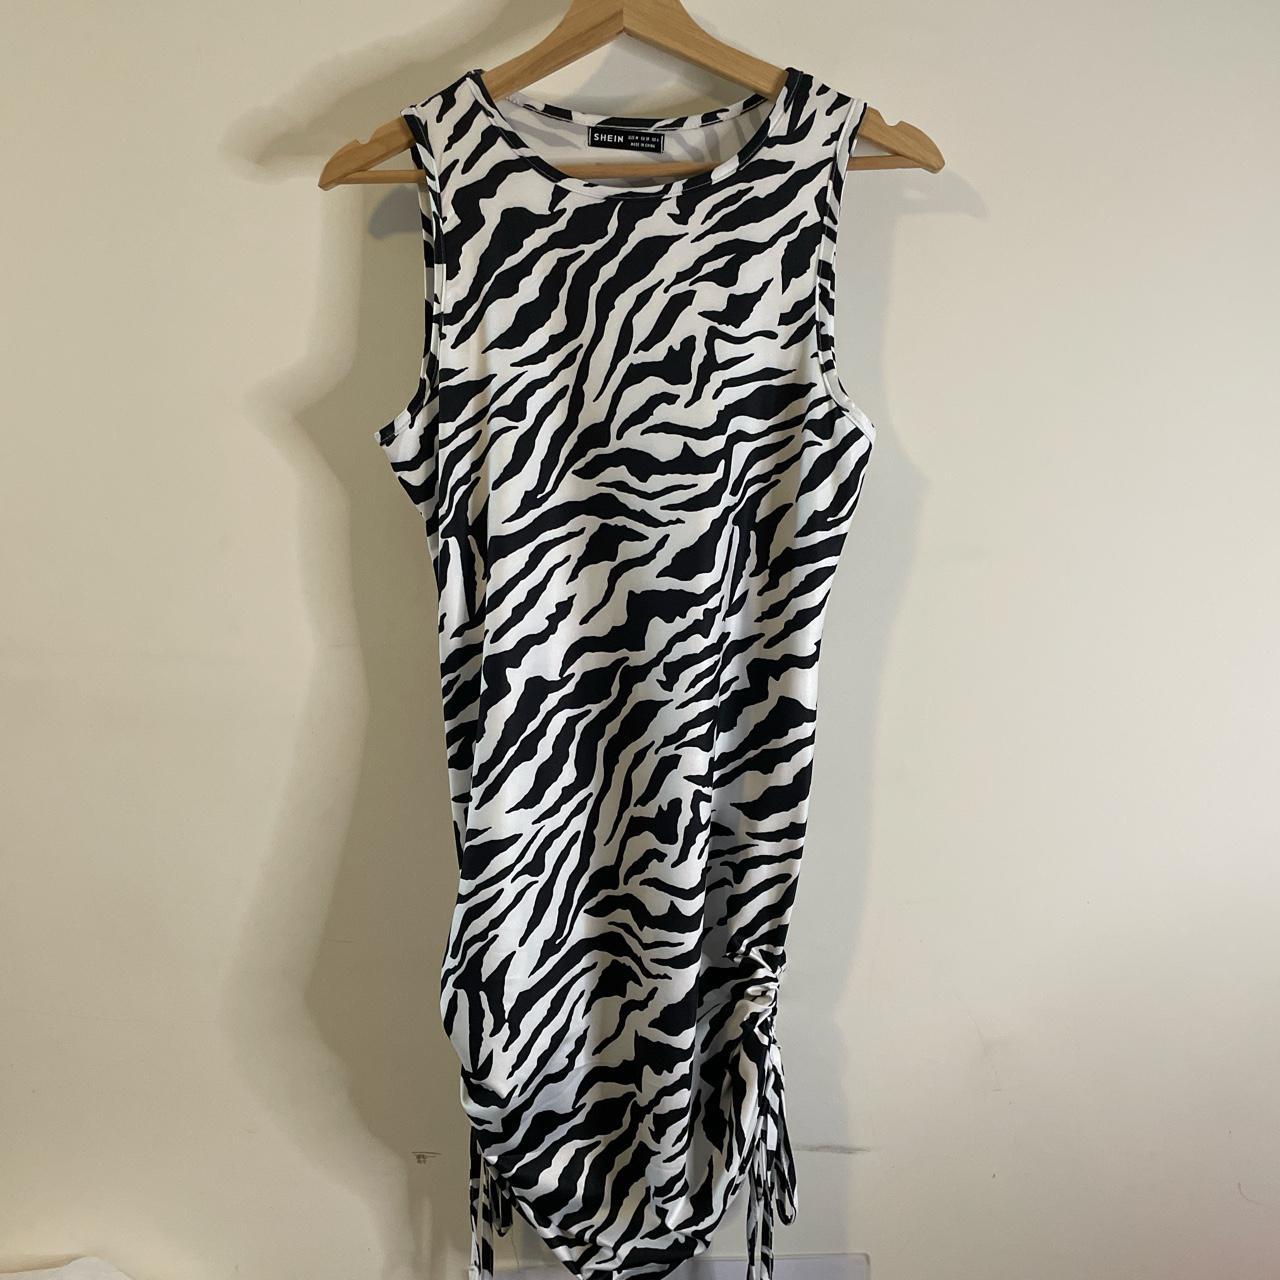 SHEIN zebra print bodycon mini dress with adjustable... - Depop